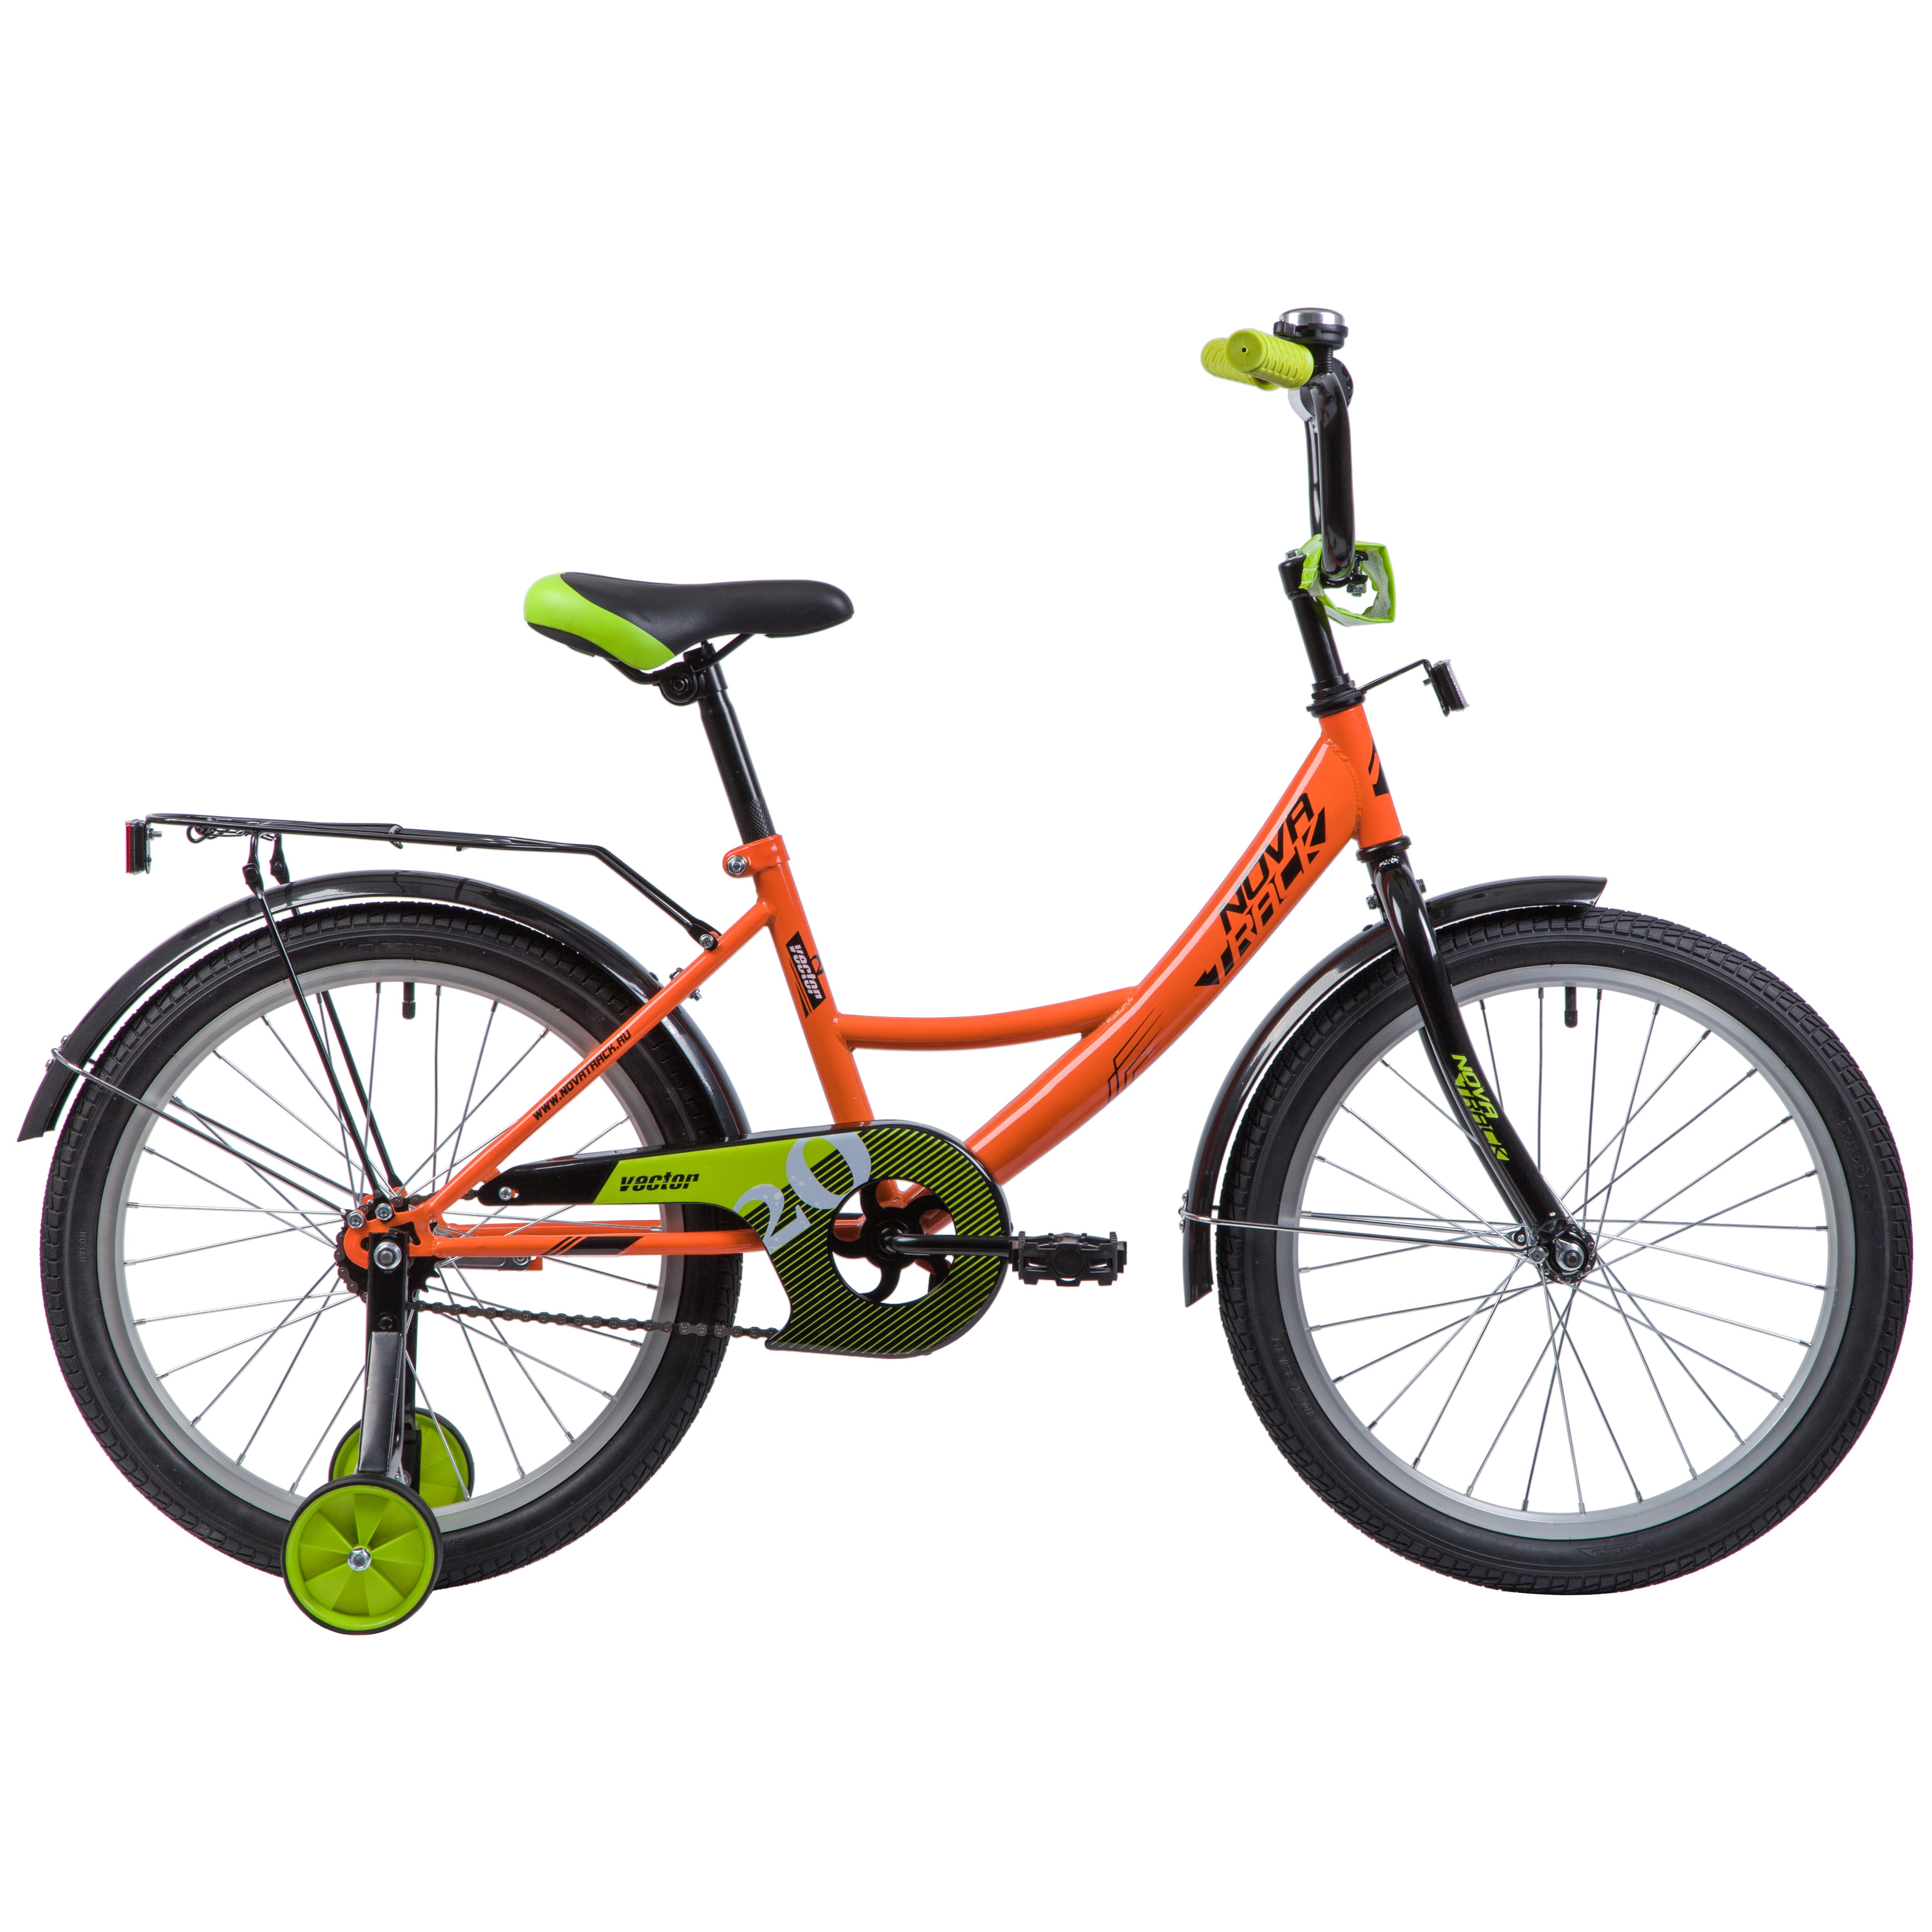 Велосипед 20 хардтейл Novatrack Vector (2019) количество скоростей 1 рама сталь 12 оранжевый